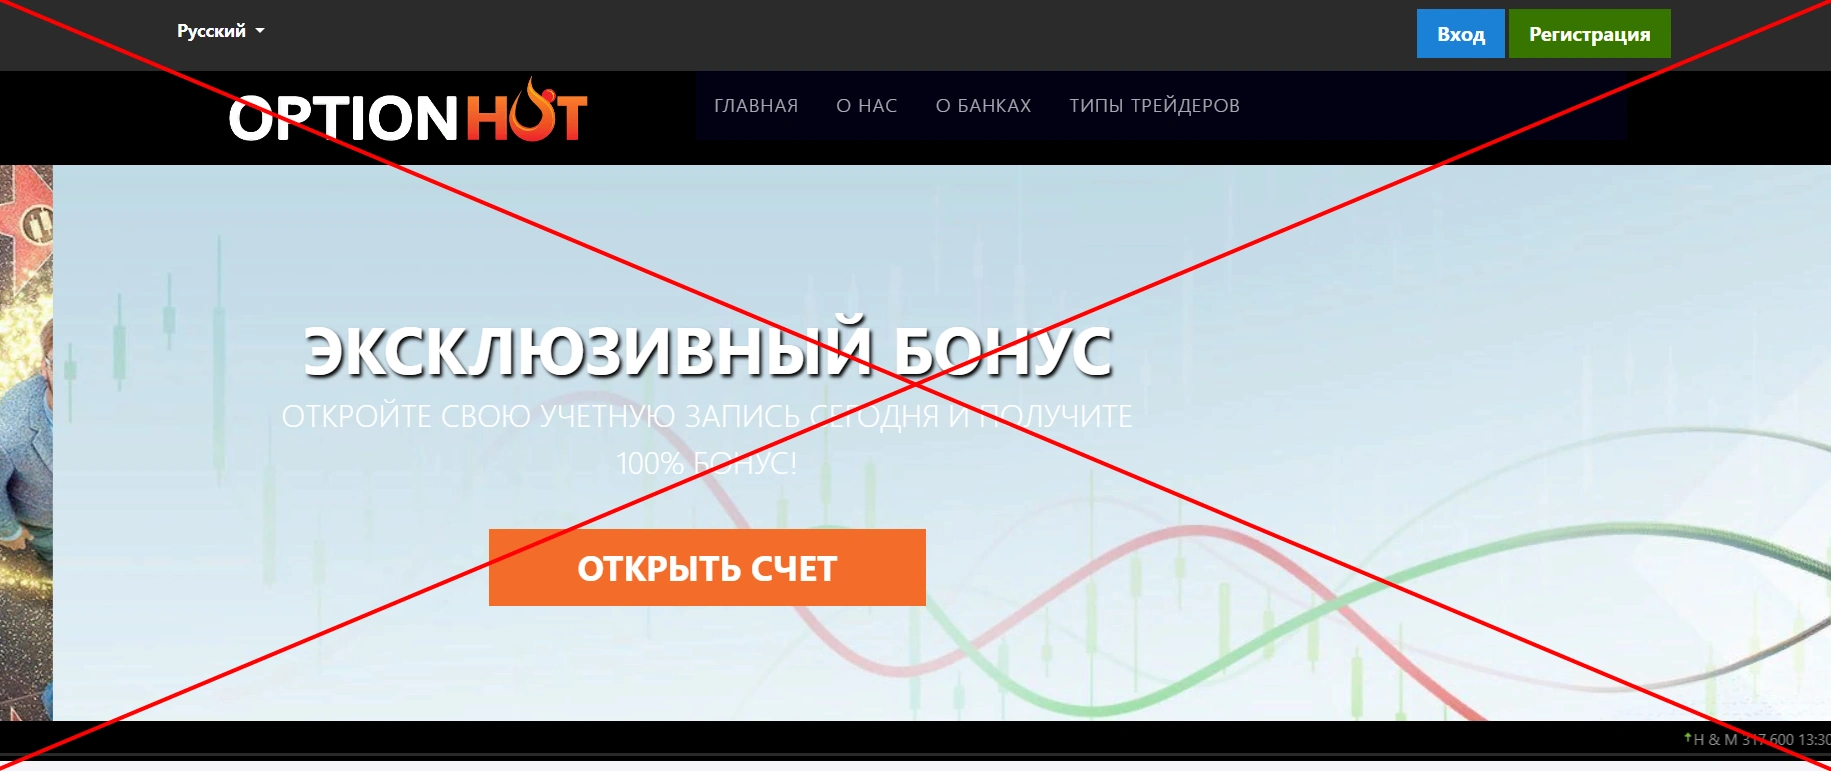 OptionHot - обзор и отзывы о компании optionhot.net